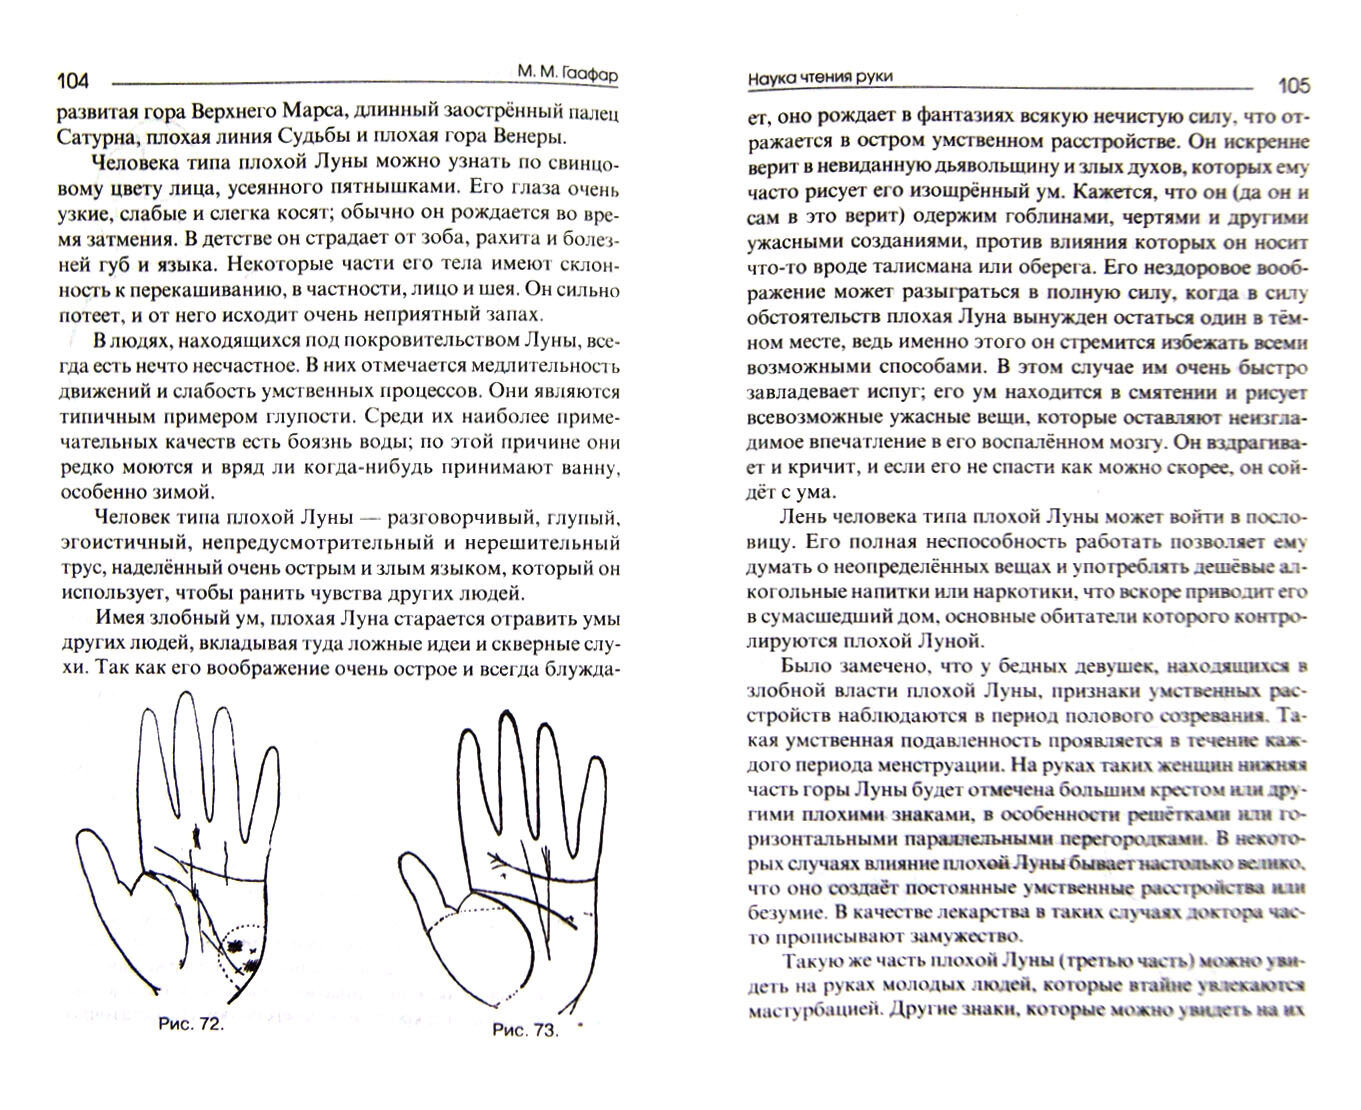 Наука чтения руки (Гаафар М.М.) - фото №2